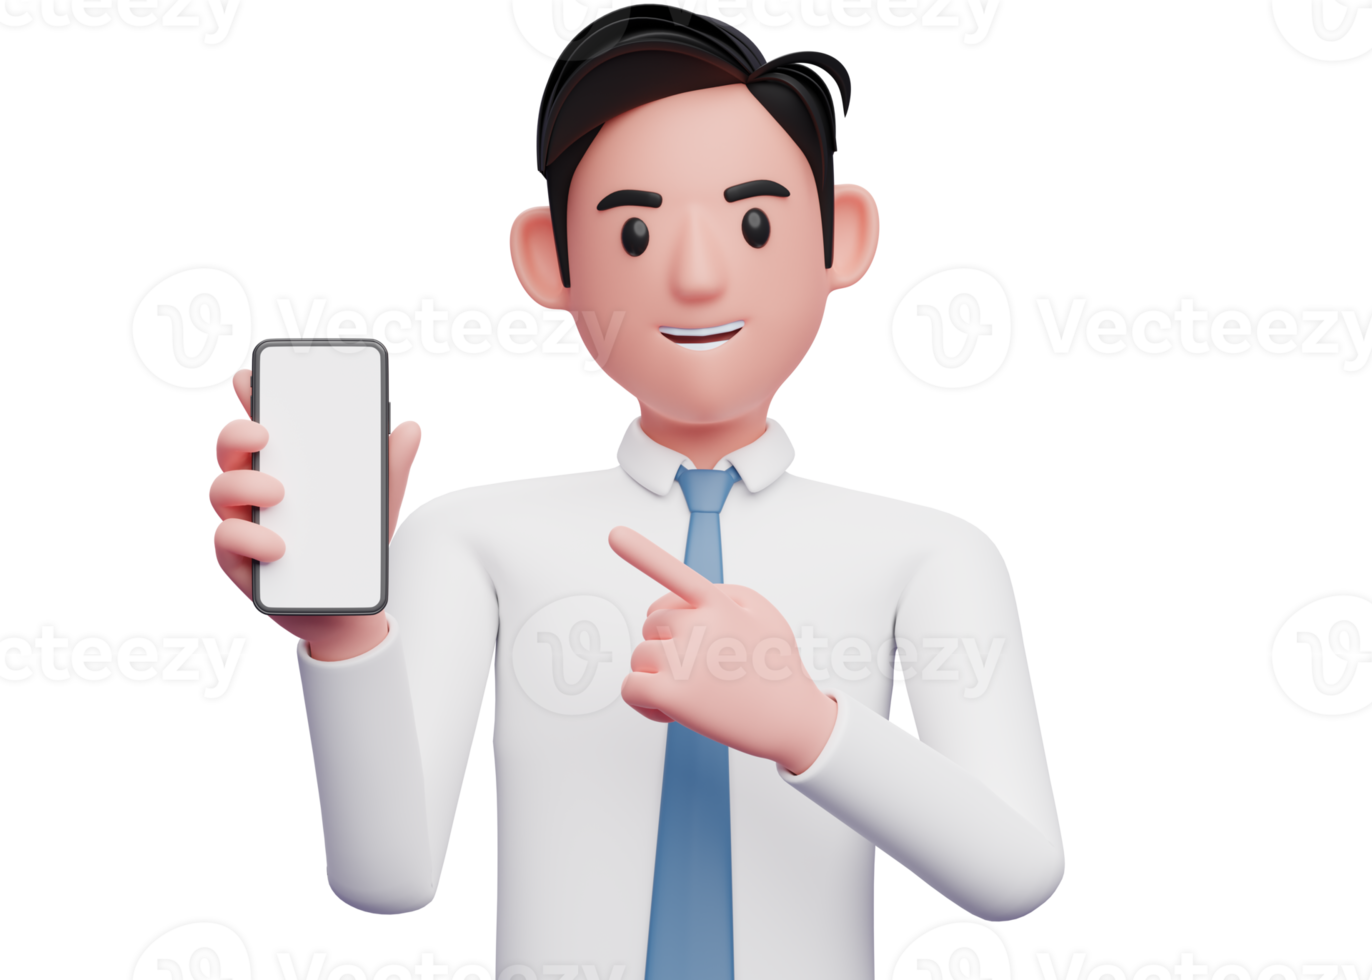 retrato de un hombre de negocios con camisa blanca y corbata azul señalando un teléfono celular en la mano, ilustración 3d de un hombre de negocios usando el teléfono png